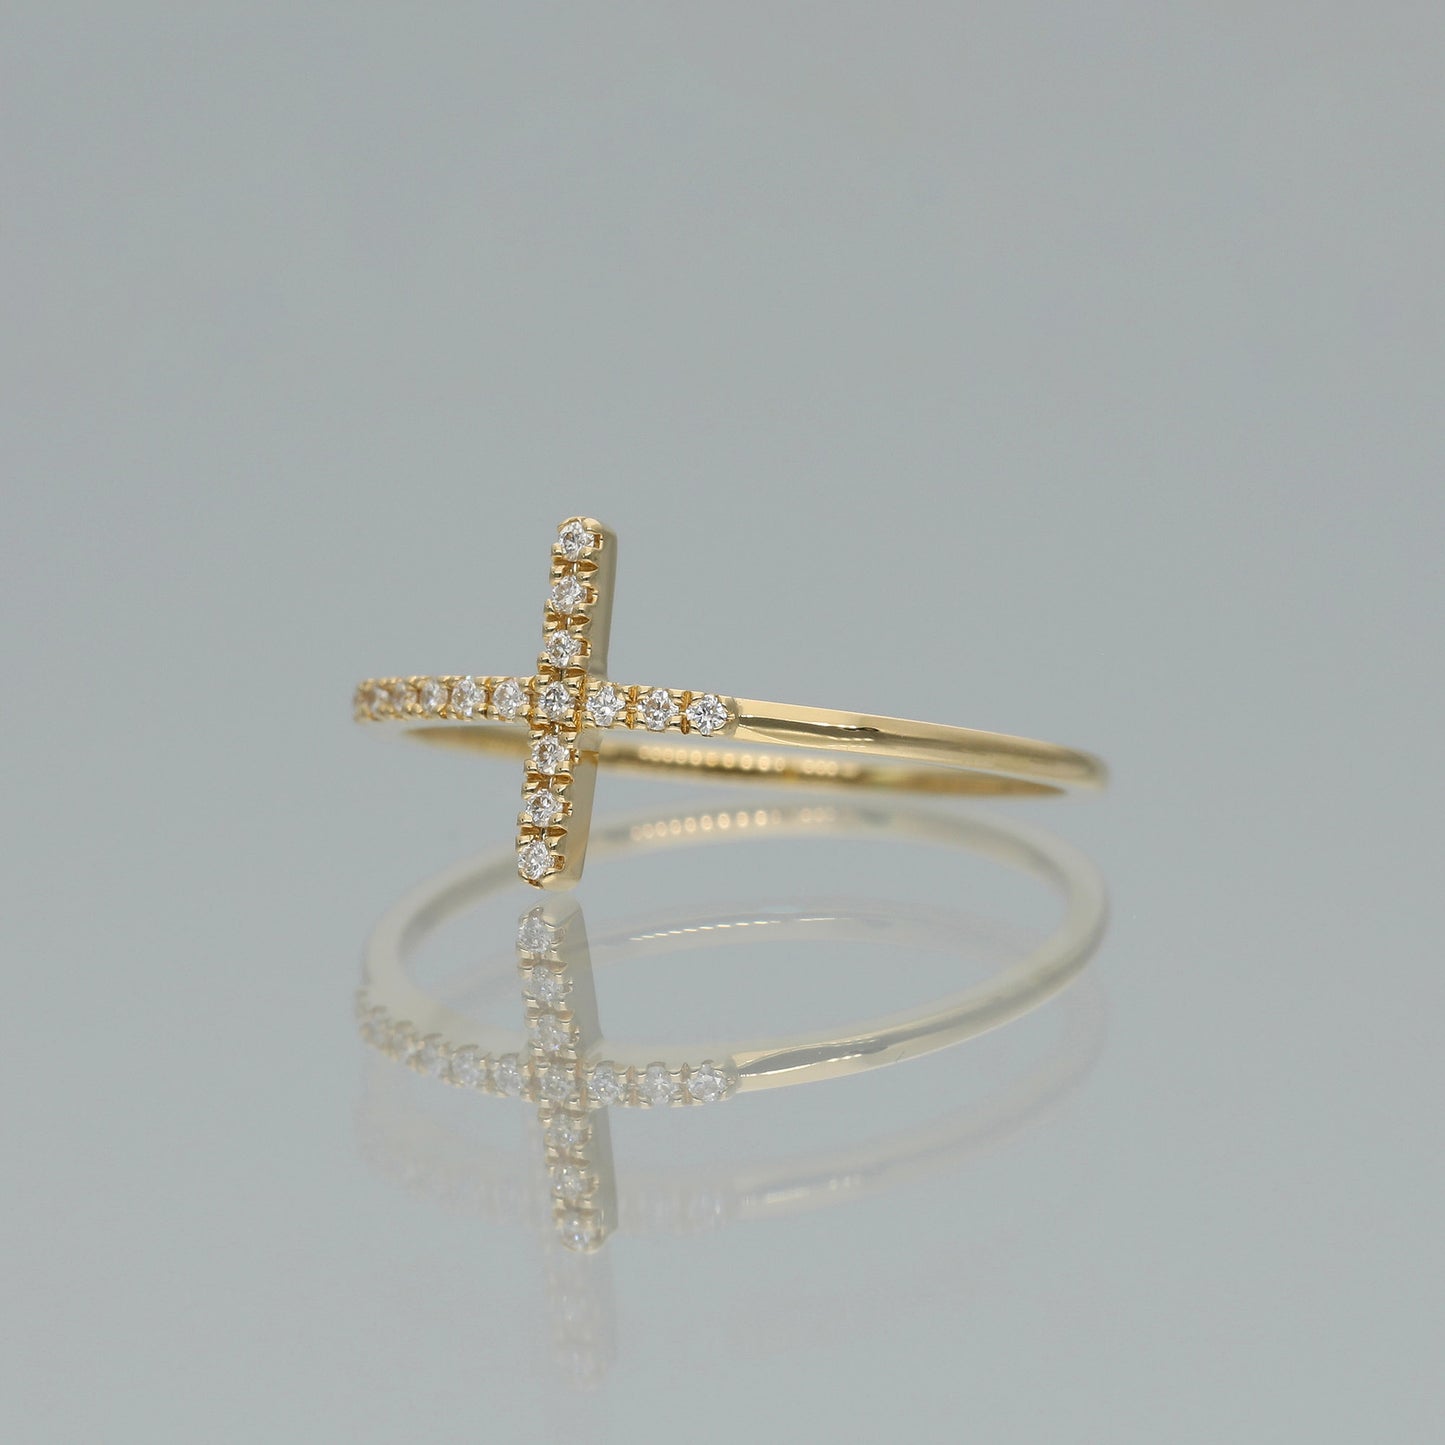 Ring “Kreuz“ aus 750 Gelbgold mit Brillanten